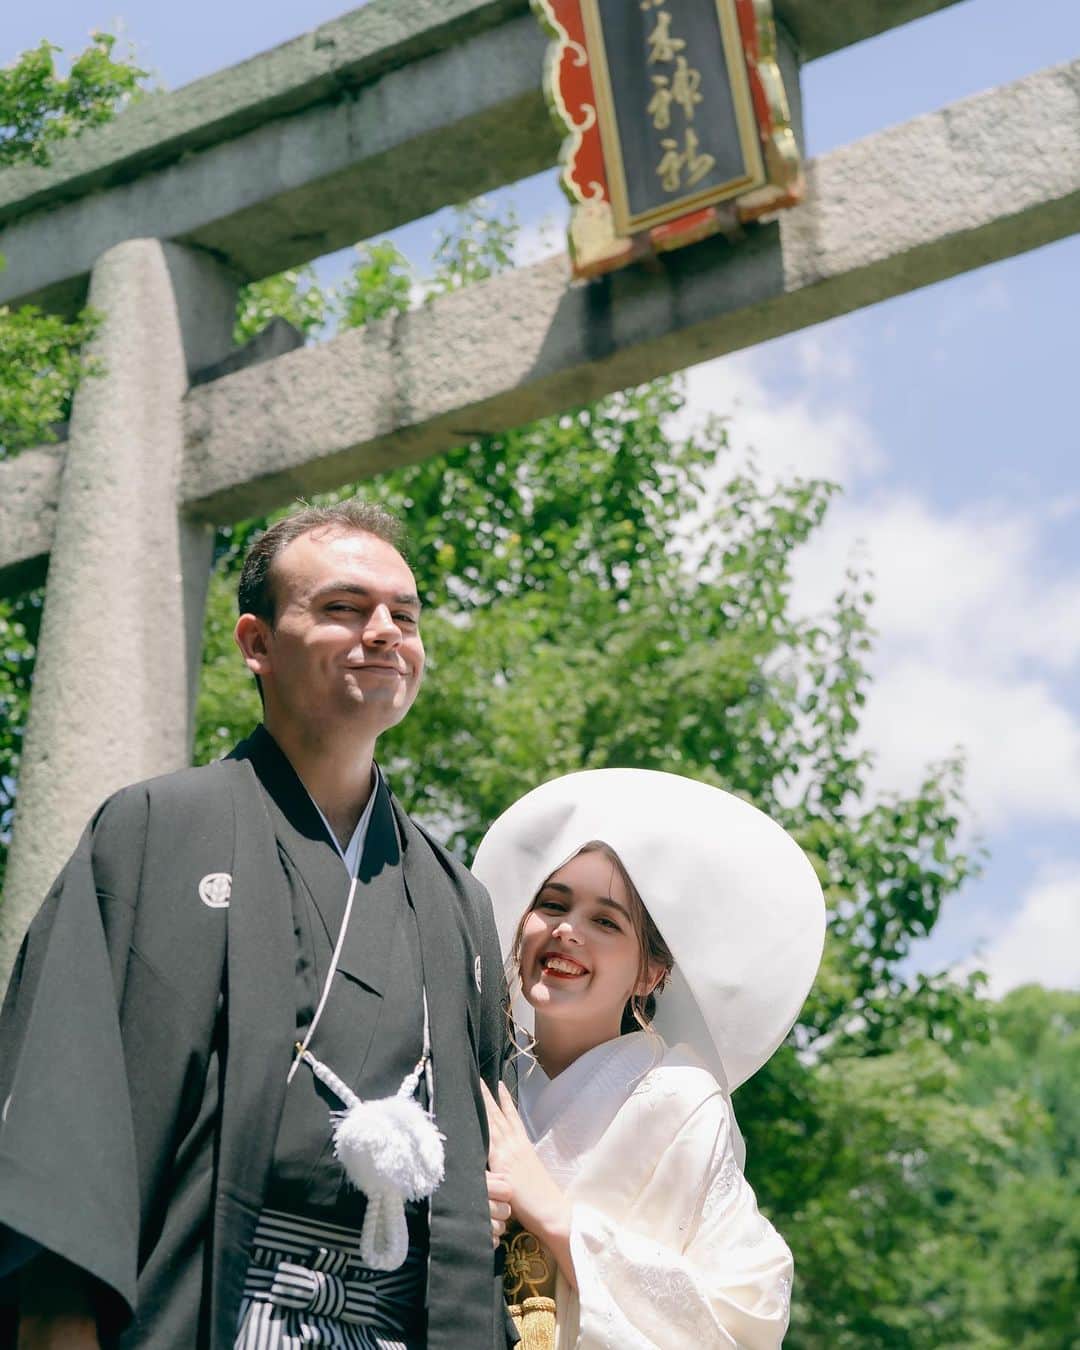 和婚スタイルのインスタグラム：「Congratulations ❤️ Beautiful wedding at Nashinoki shrine in Kyoto, Japan!  english.wakon-style.jp  Please contact us!  #神社挙式 #白無垢 #Shintowedding #japanesetraditionalwedding #shiromuku #shrine #temple #weddingceremonyatJapan #kyotowedding #lgbtq #wakonstyle #buddhistwedding #destinationwedding #weddingphotography #happiestmoment #redtriigate #tokyo #fukuoka #kyoto #kimono #bride #weddingreception #shinto #japantrip #elopement  #bride’shairstyle #thailand #colouredkimono #色打掛」